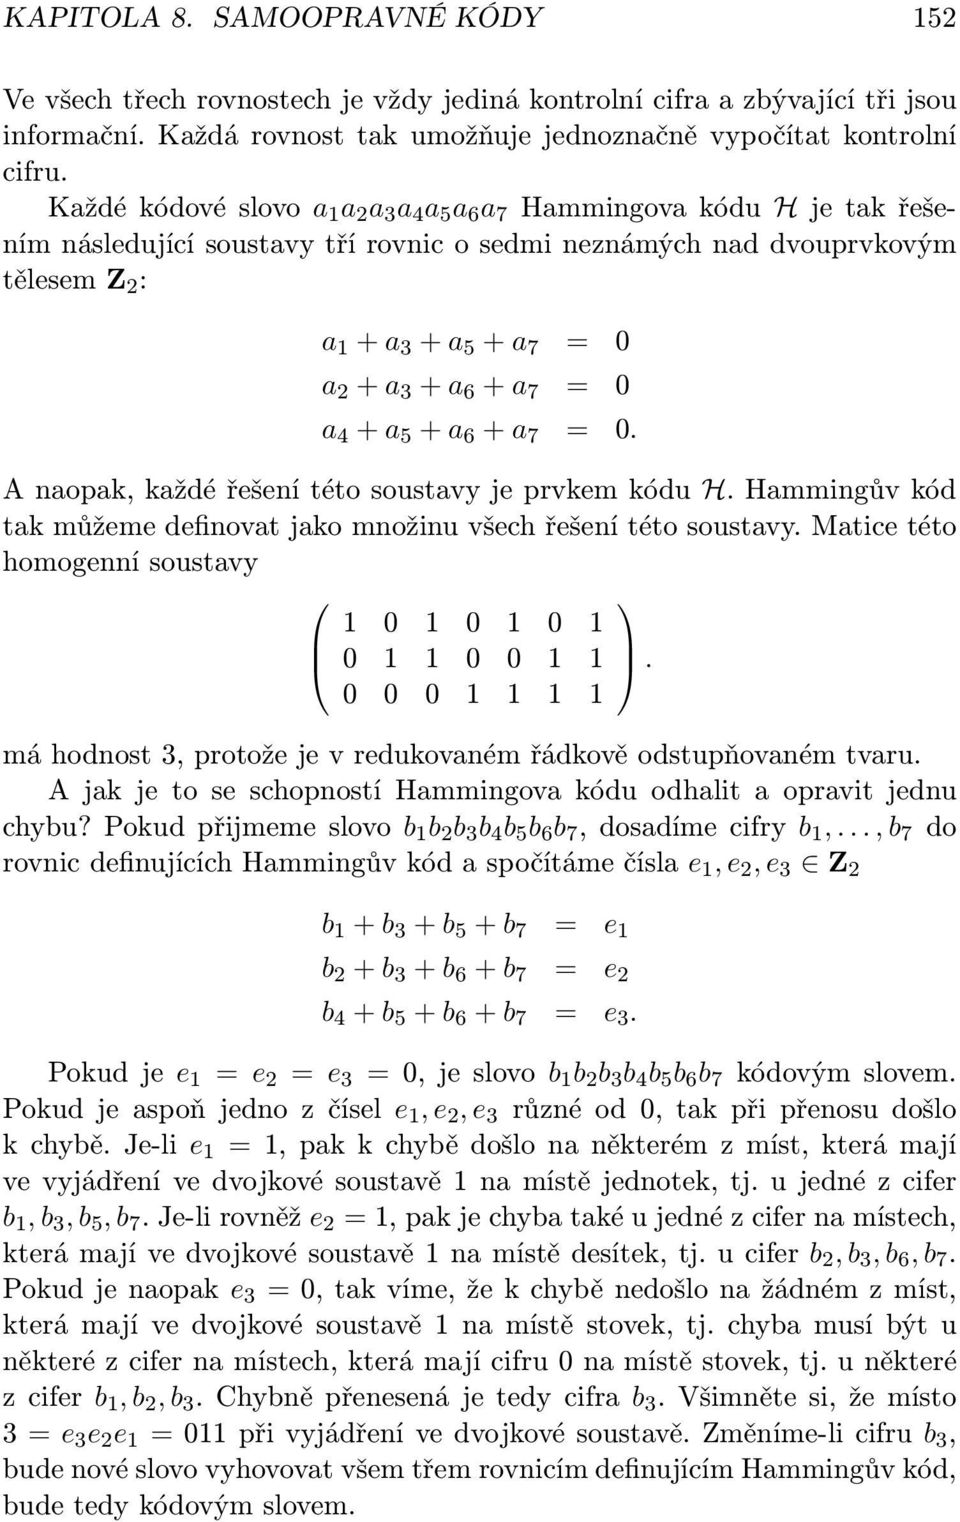 a 6 + a 7 = 0 a 4 + a 5 + a 6 + a 7 = 0. A naopak, každé řešení této soustavy je prvkem kódu H. Hammingův kód tak můžeme definovat jako množinu všech řešení této soustavy.